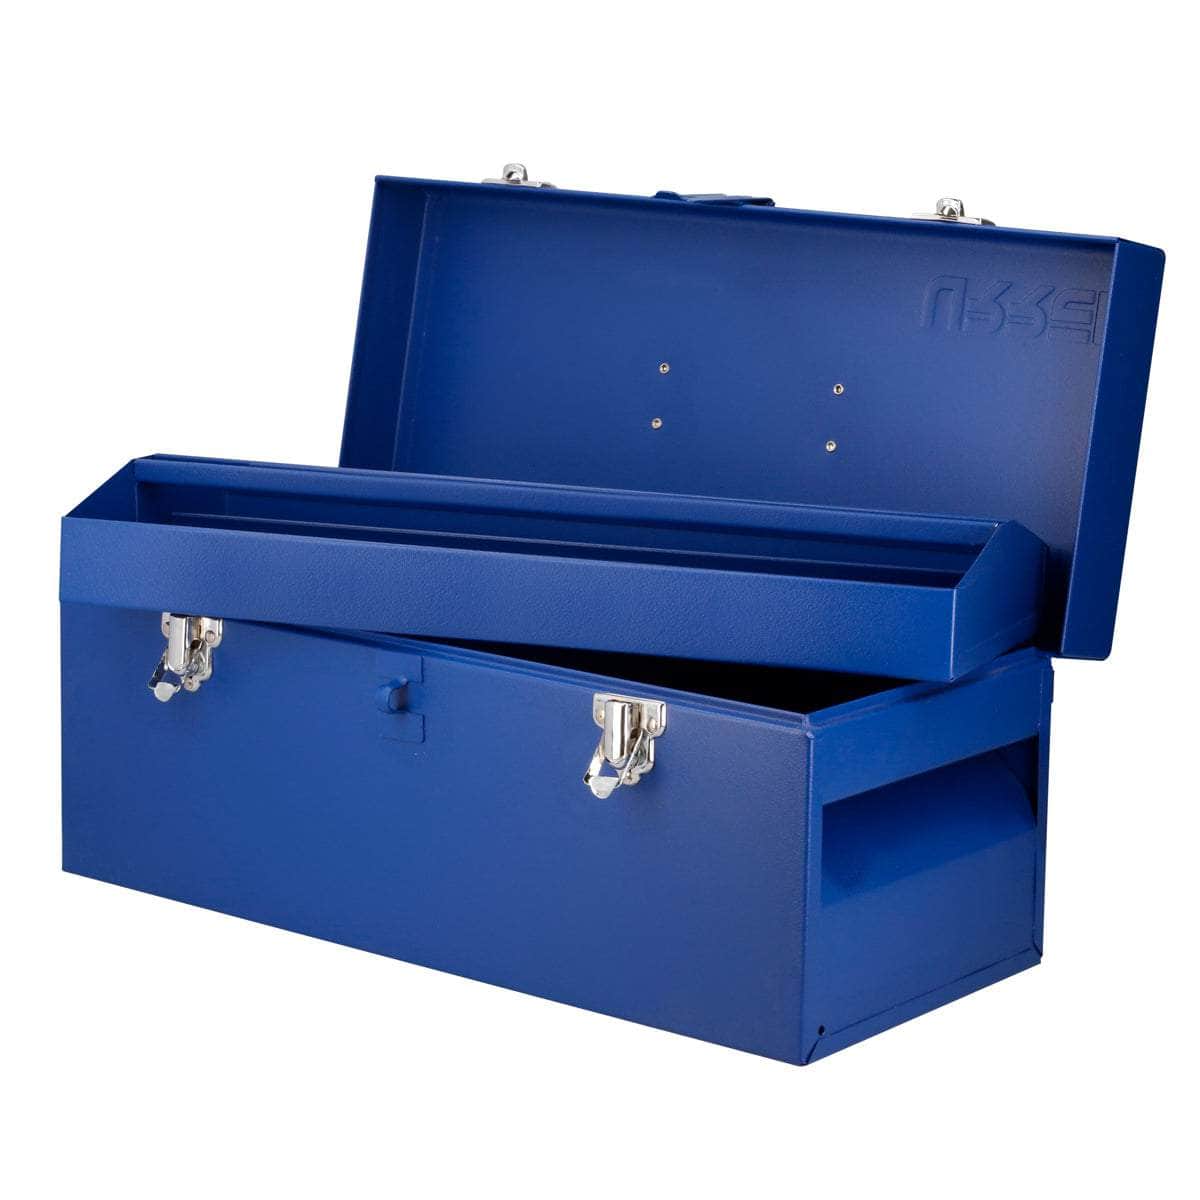 D4A Caja portaherramientas metálica azul 17" x 7" x 7", cod.D4A Urrea Urrea